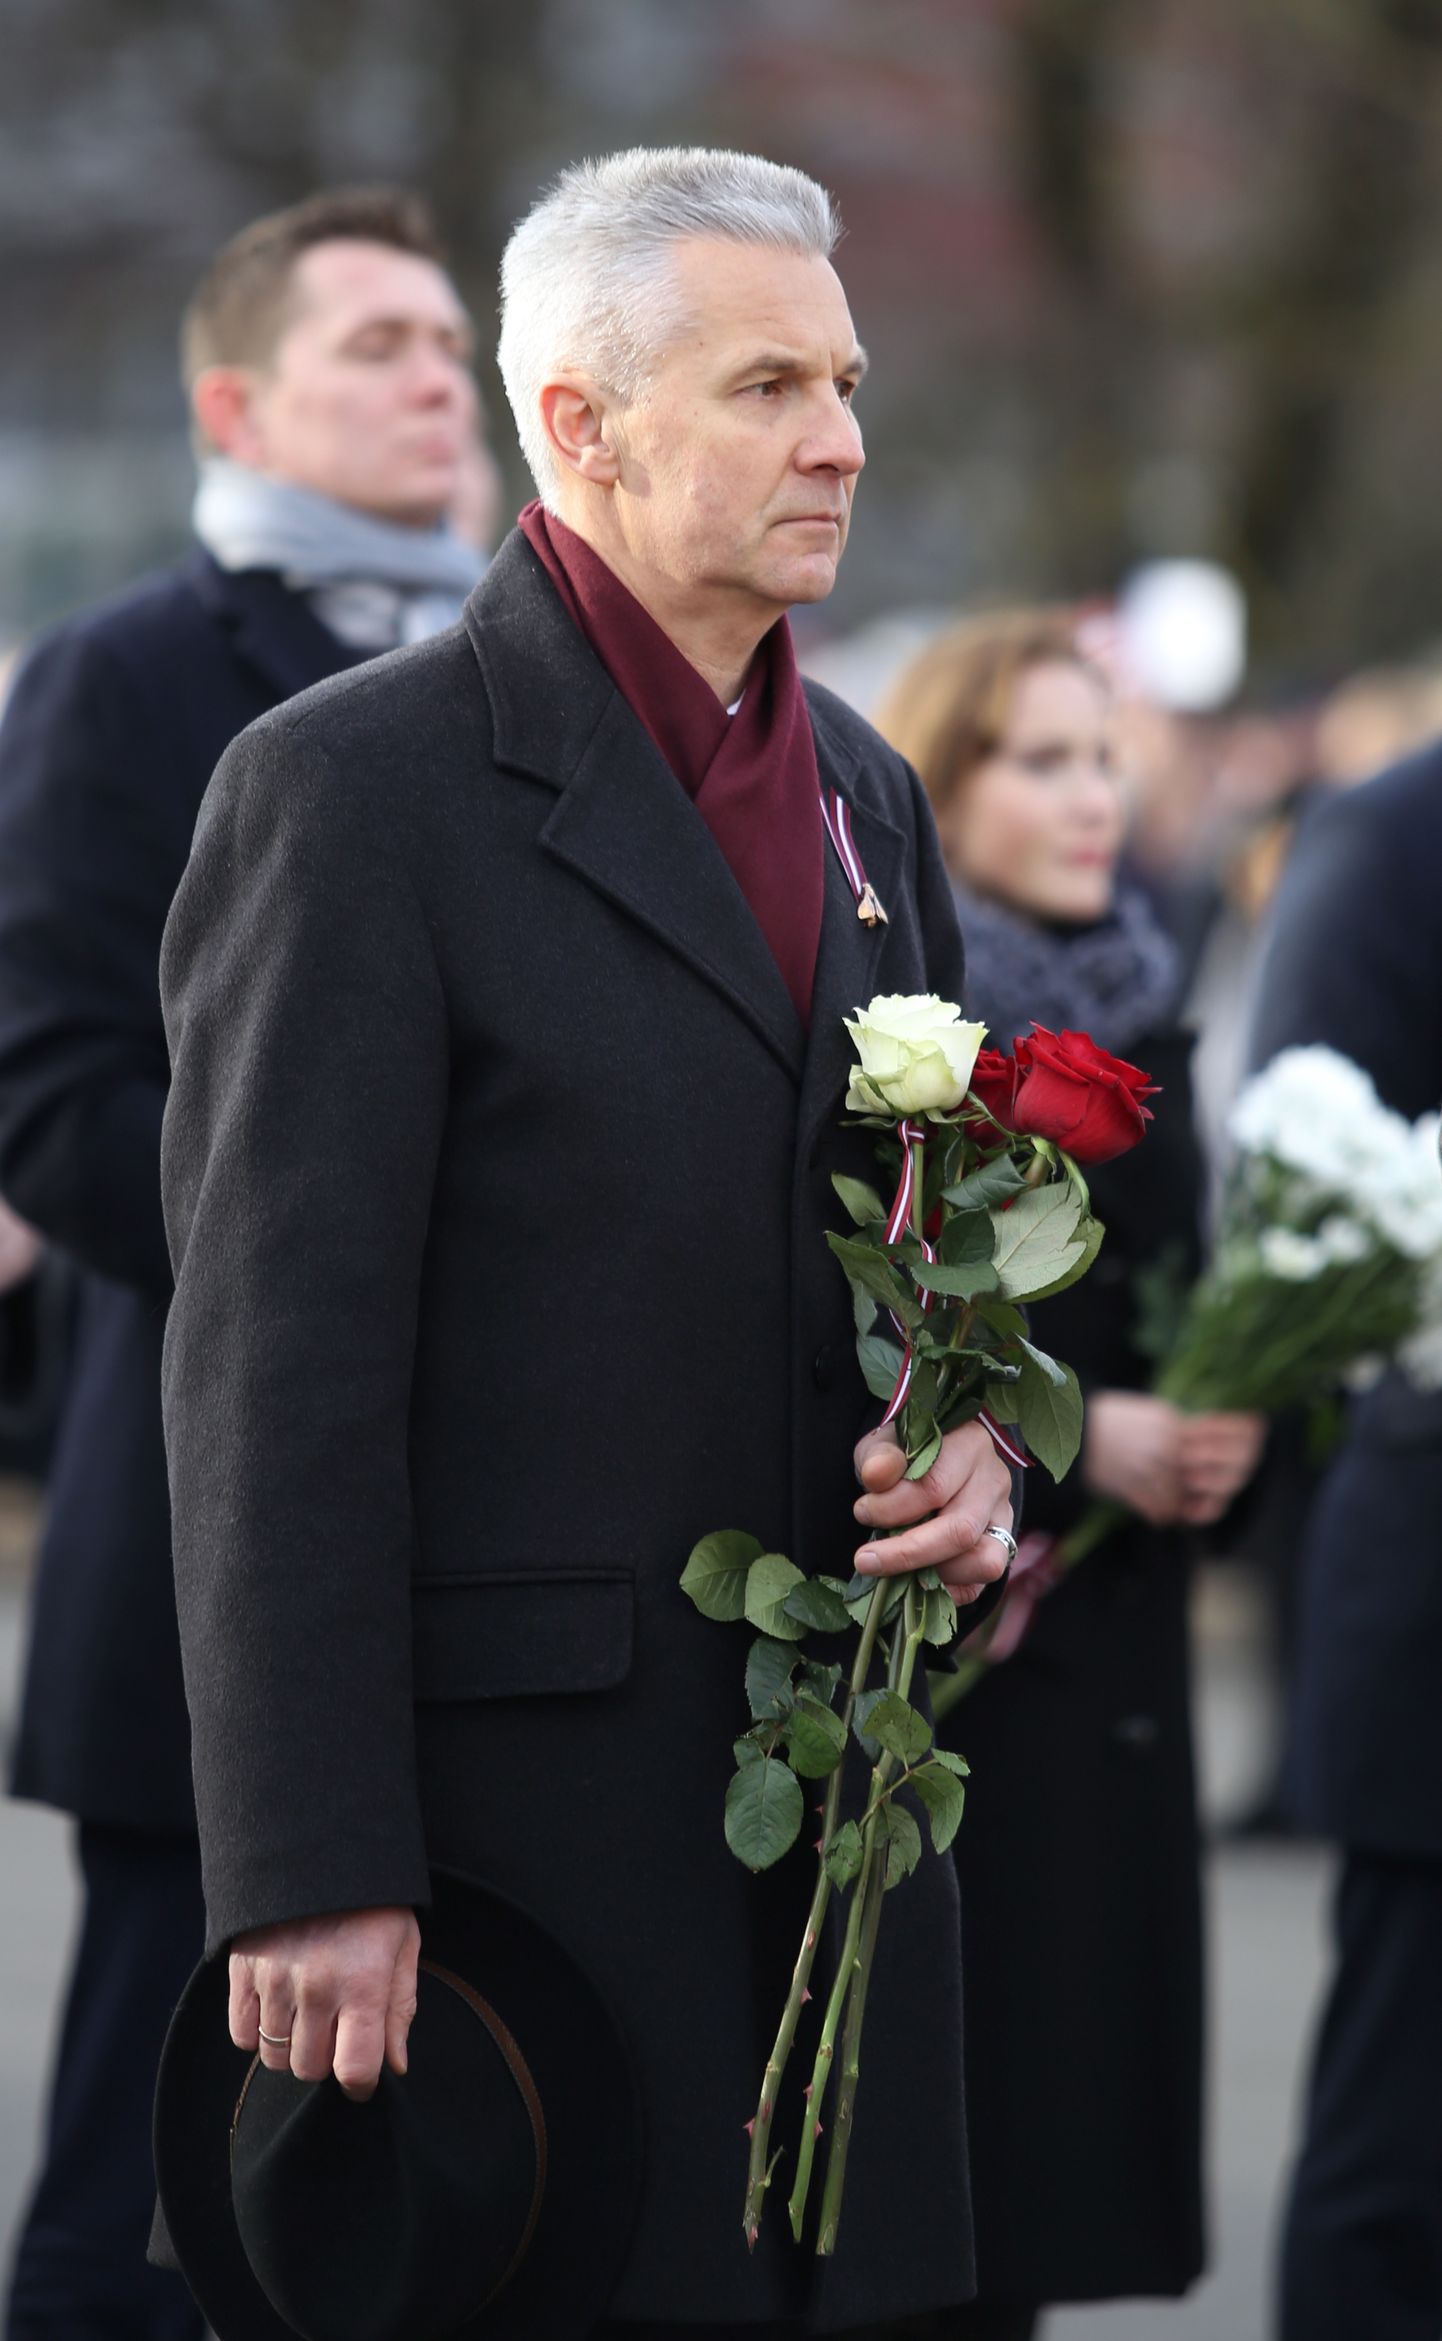 Saeimas deputāts Artis Pabriks piedalās svinīgajā ziedu nolikšanas ceremonijā pie Brīvības pieminekļa par godu Latvijas proklamēšanas 100.gadadienai.